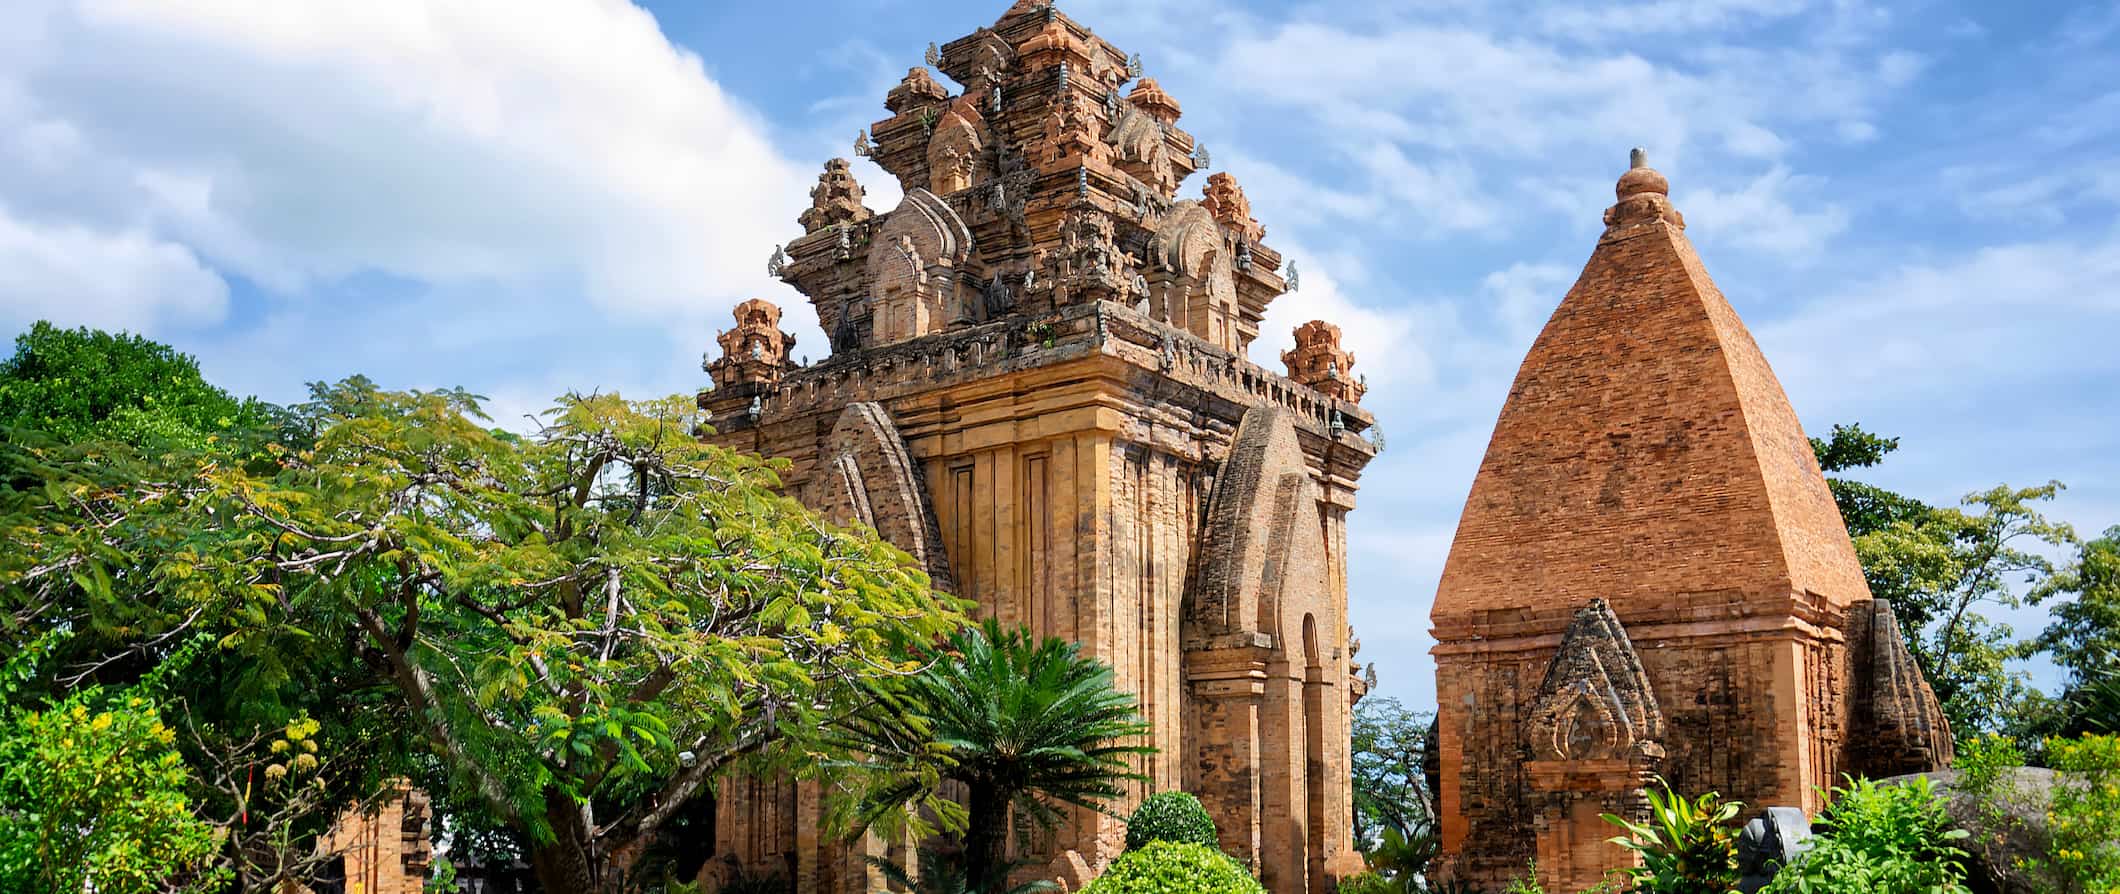 The towering Po Nagar pagoda in Nha Trang, Vietnam